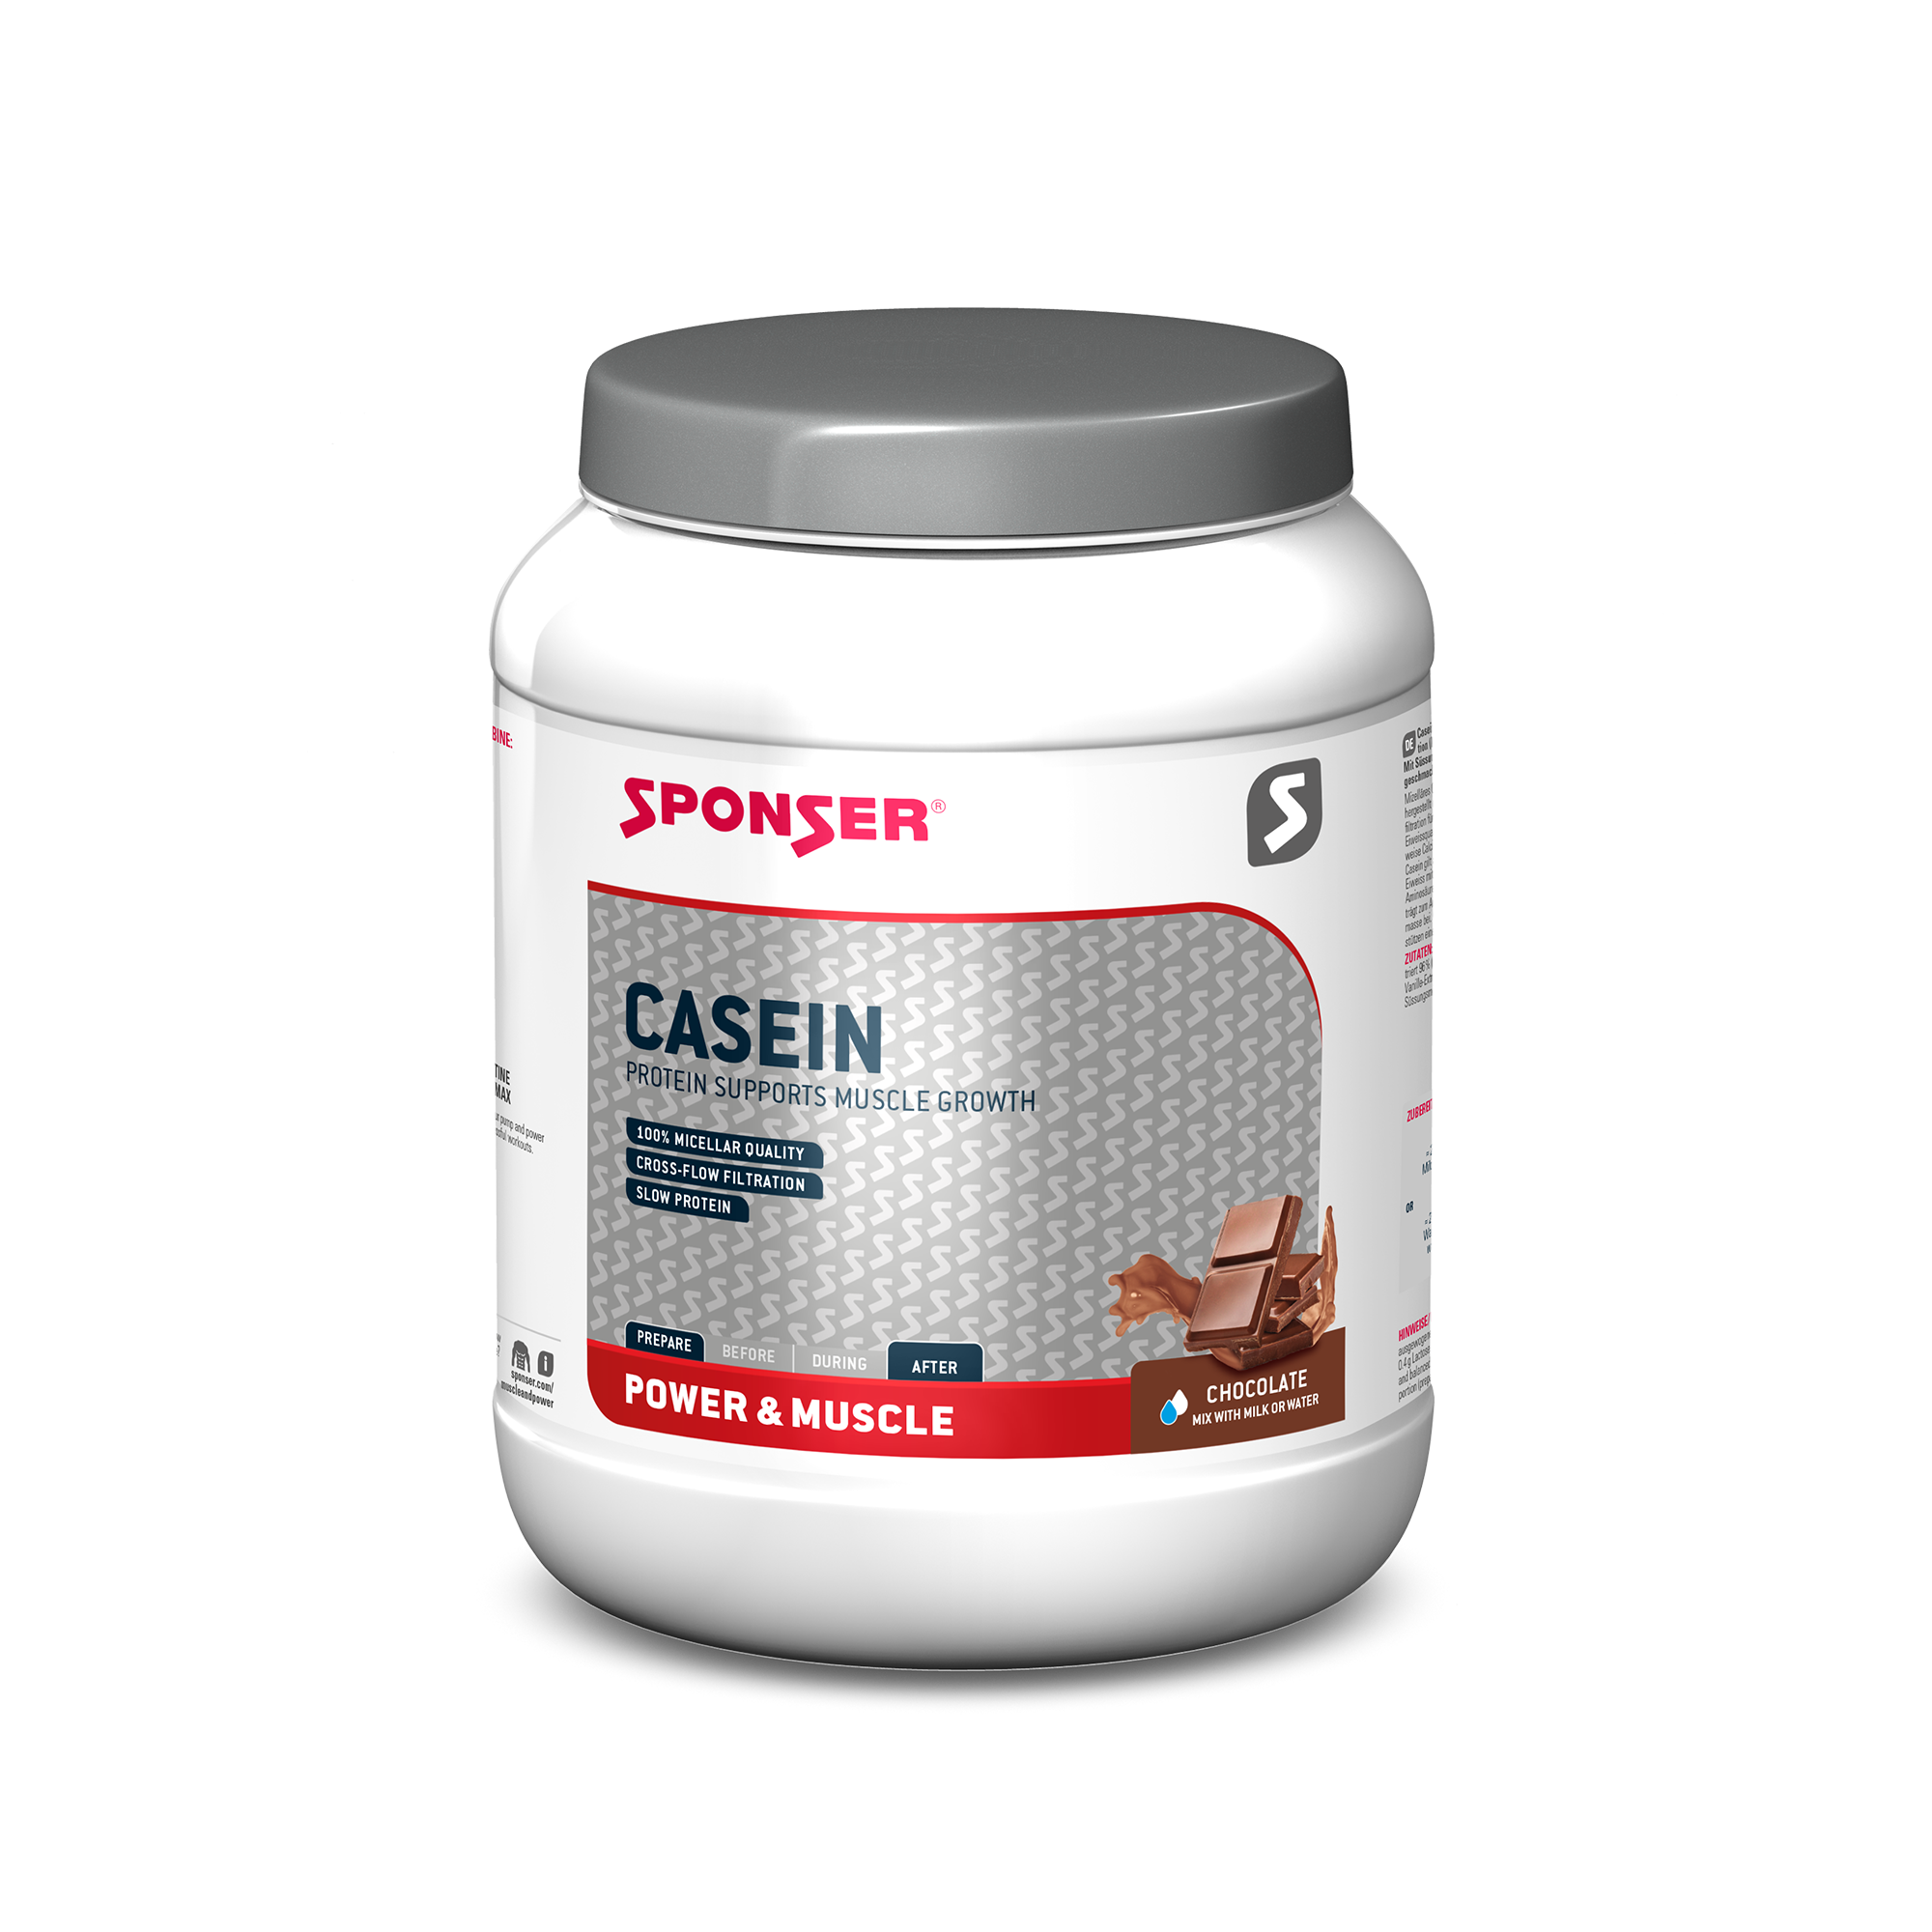 Sponser Casein Chocolate proteinpulver, 850 g. 